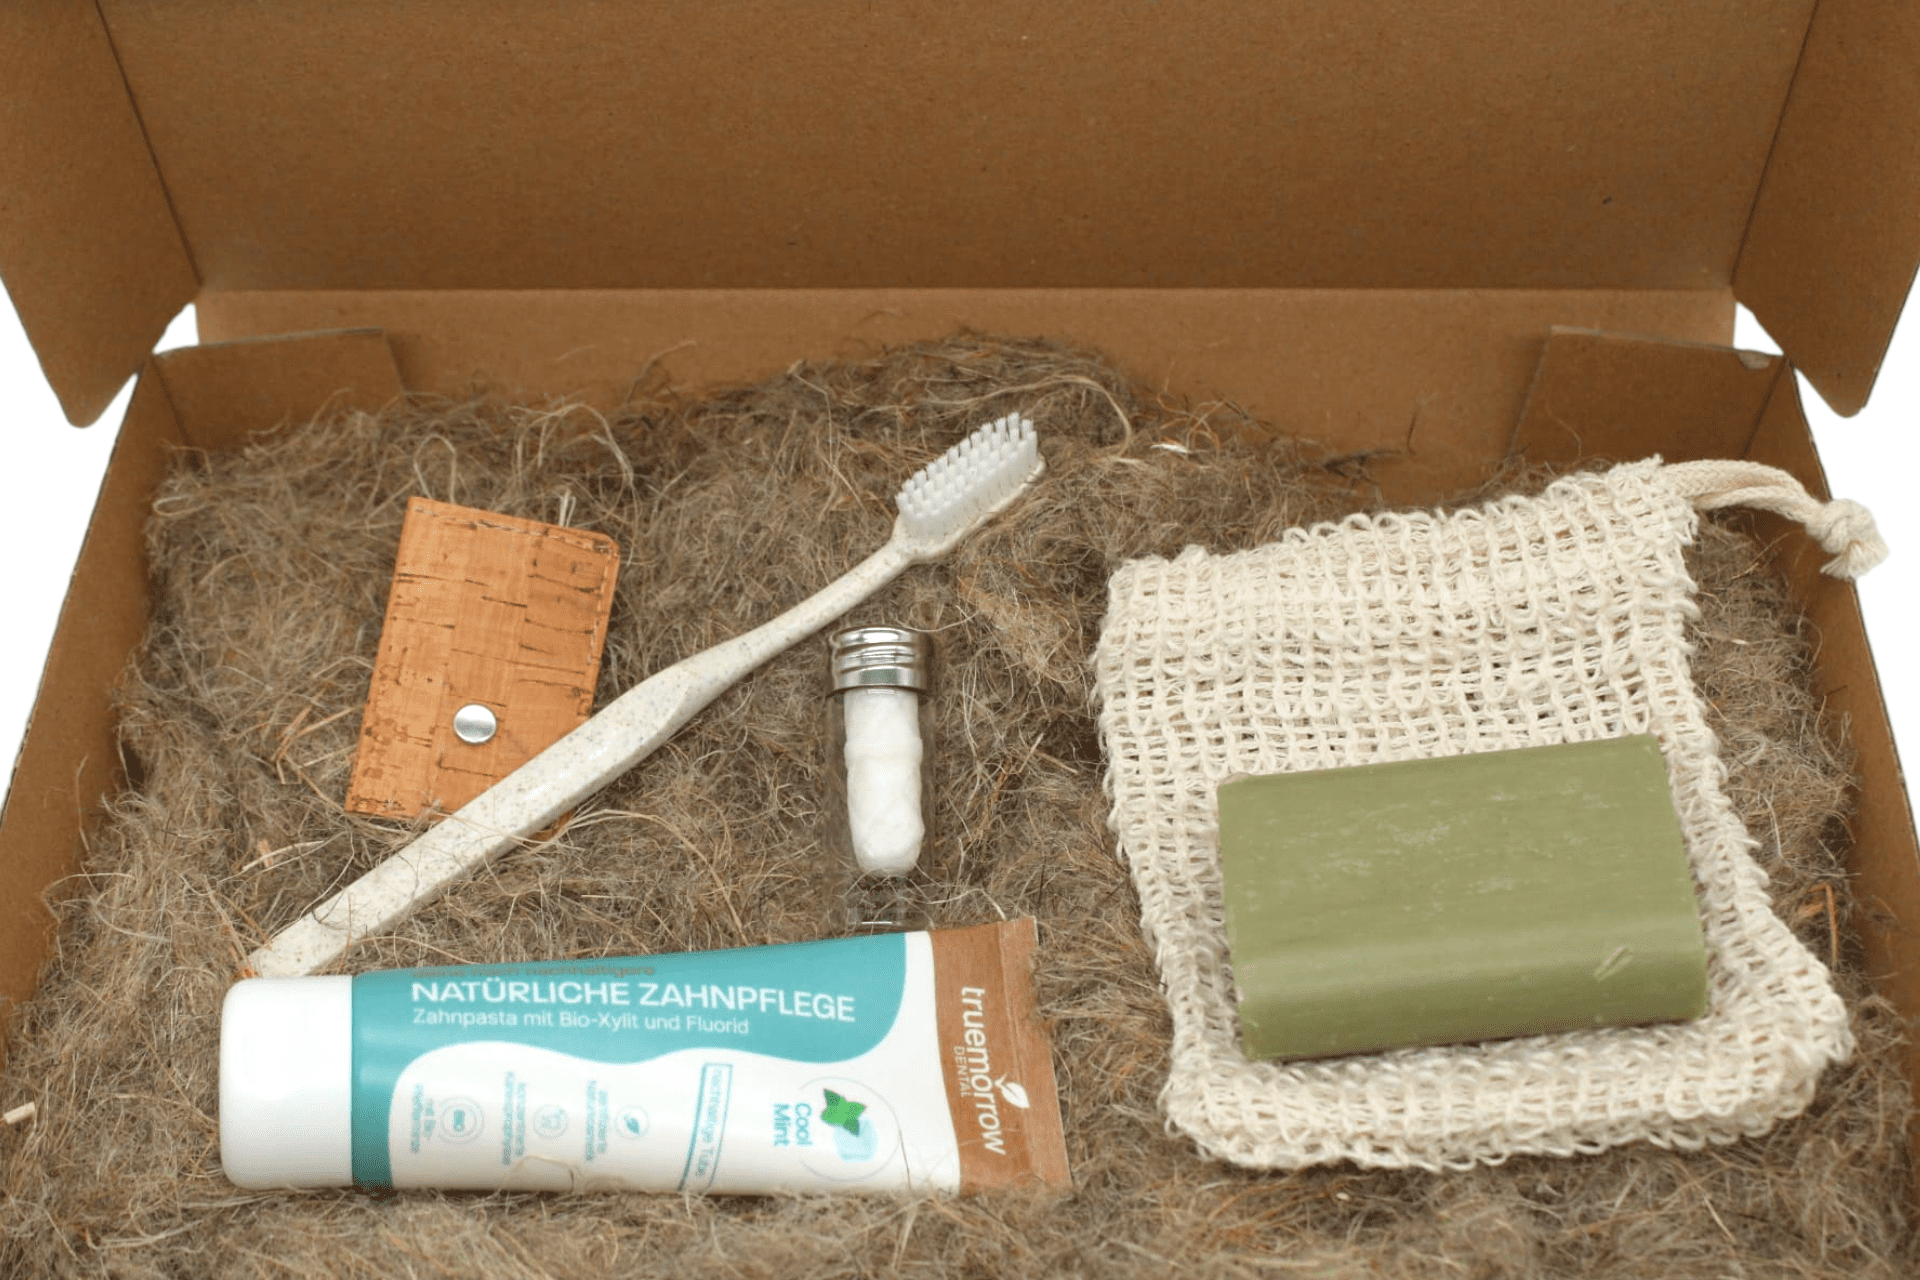 Zero Waste Kit platziert in Karton mit Hanfwolle